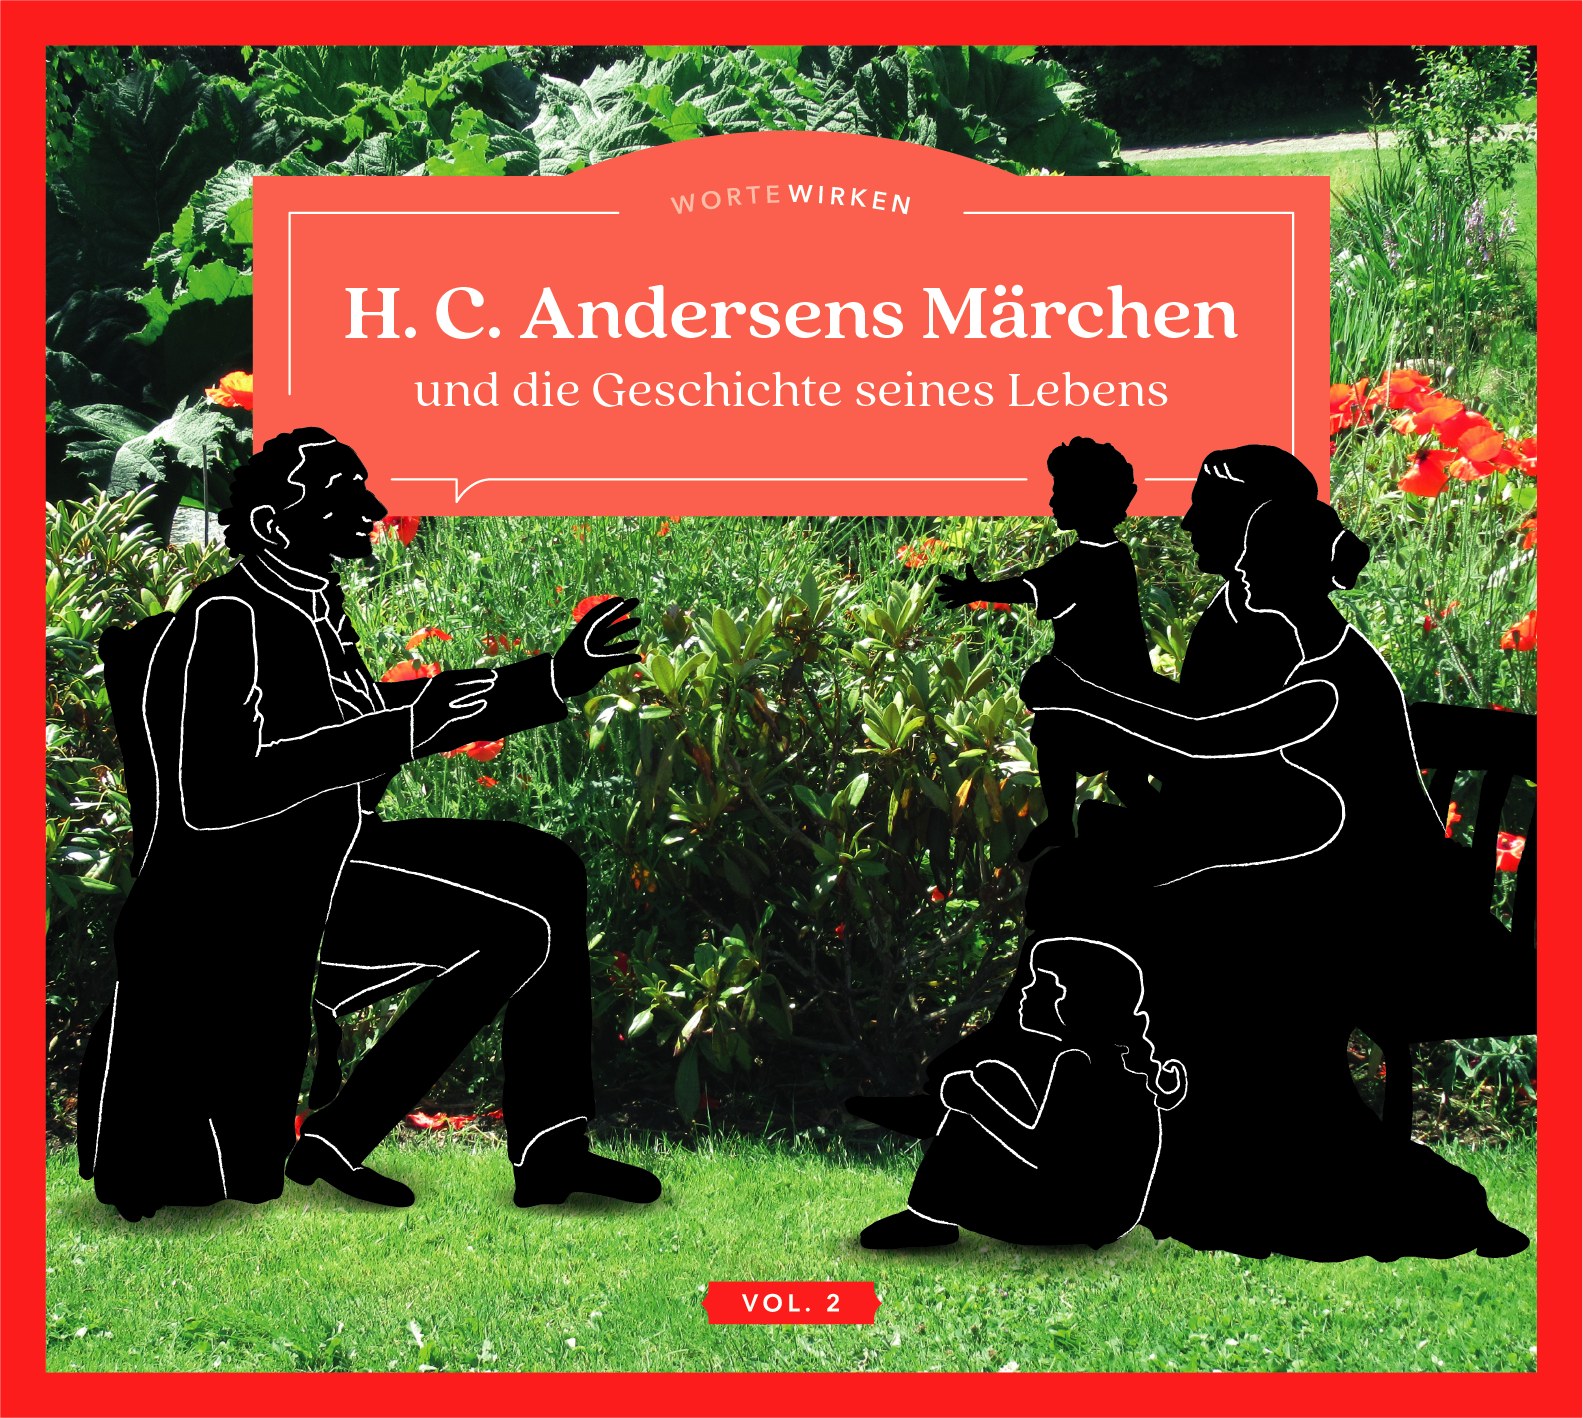 H. C. Andersens Märchen Vol. 2